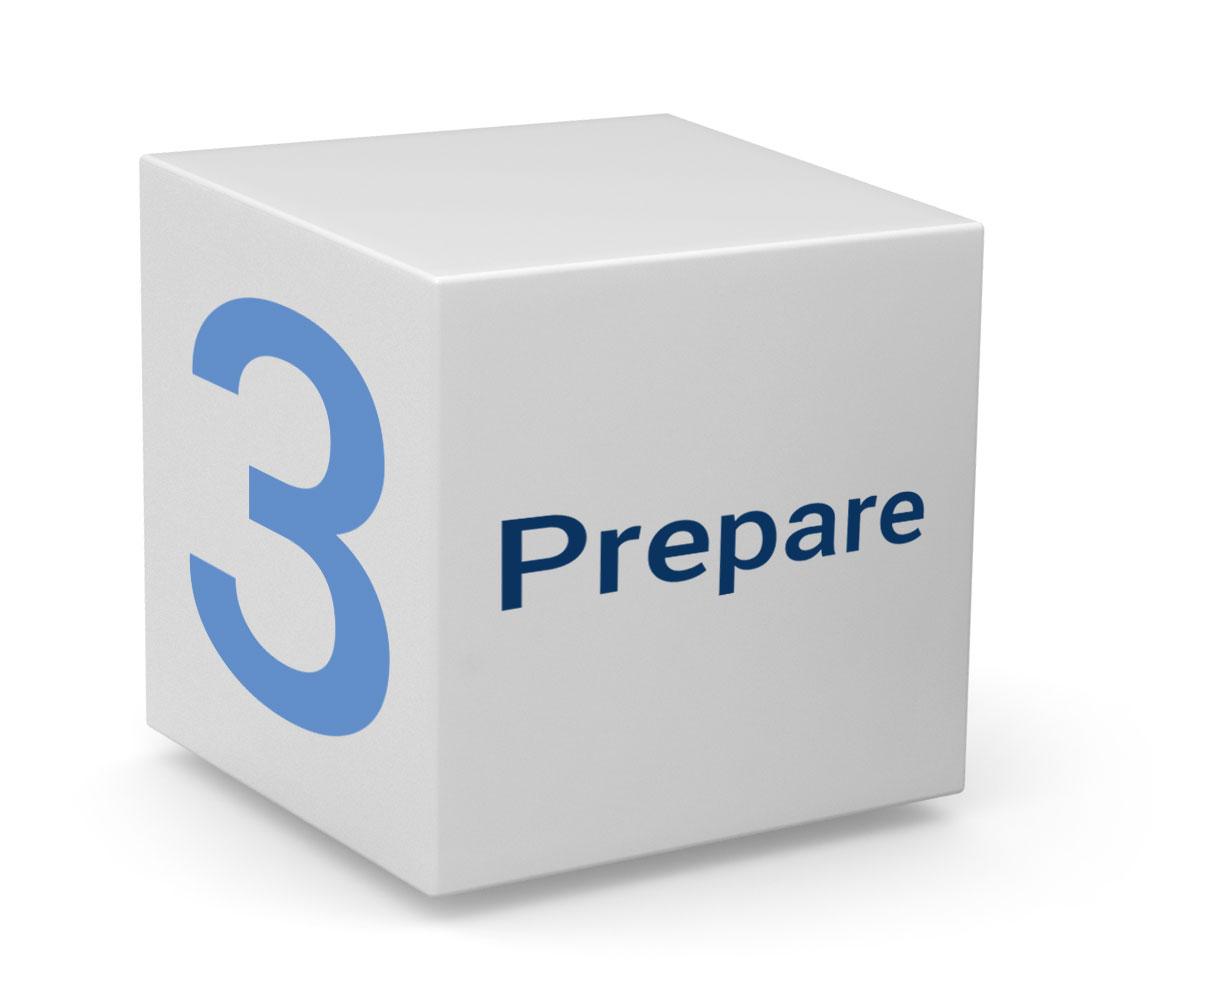 3 - Prepare